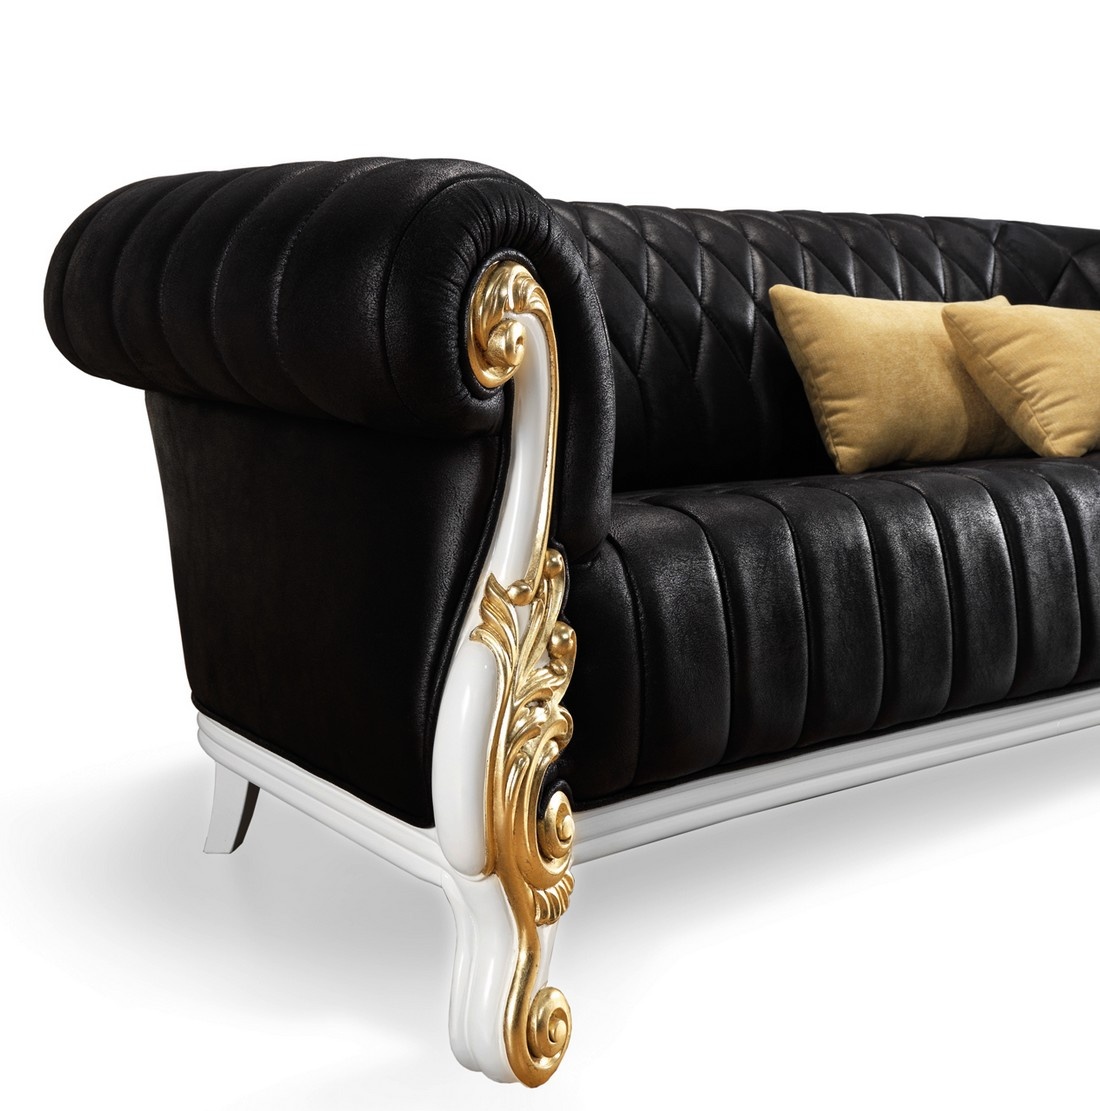 O sofa 2 Lugares New Kiev é o complemento perfeito para a sua casa! Esta peça de mobiliário apresenta design moderno e sofisticado, que o vai deixar com um ar elegante e luxuoso!